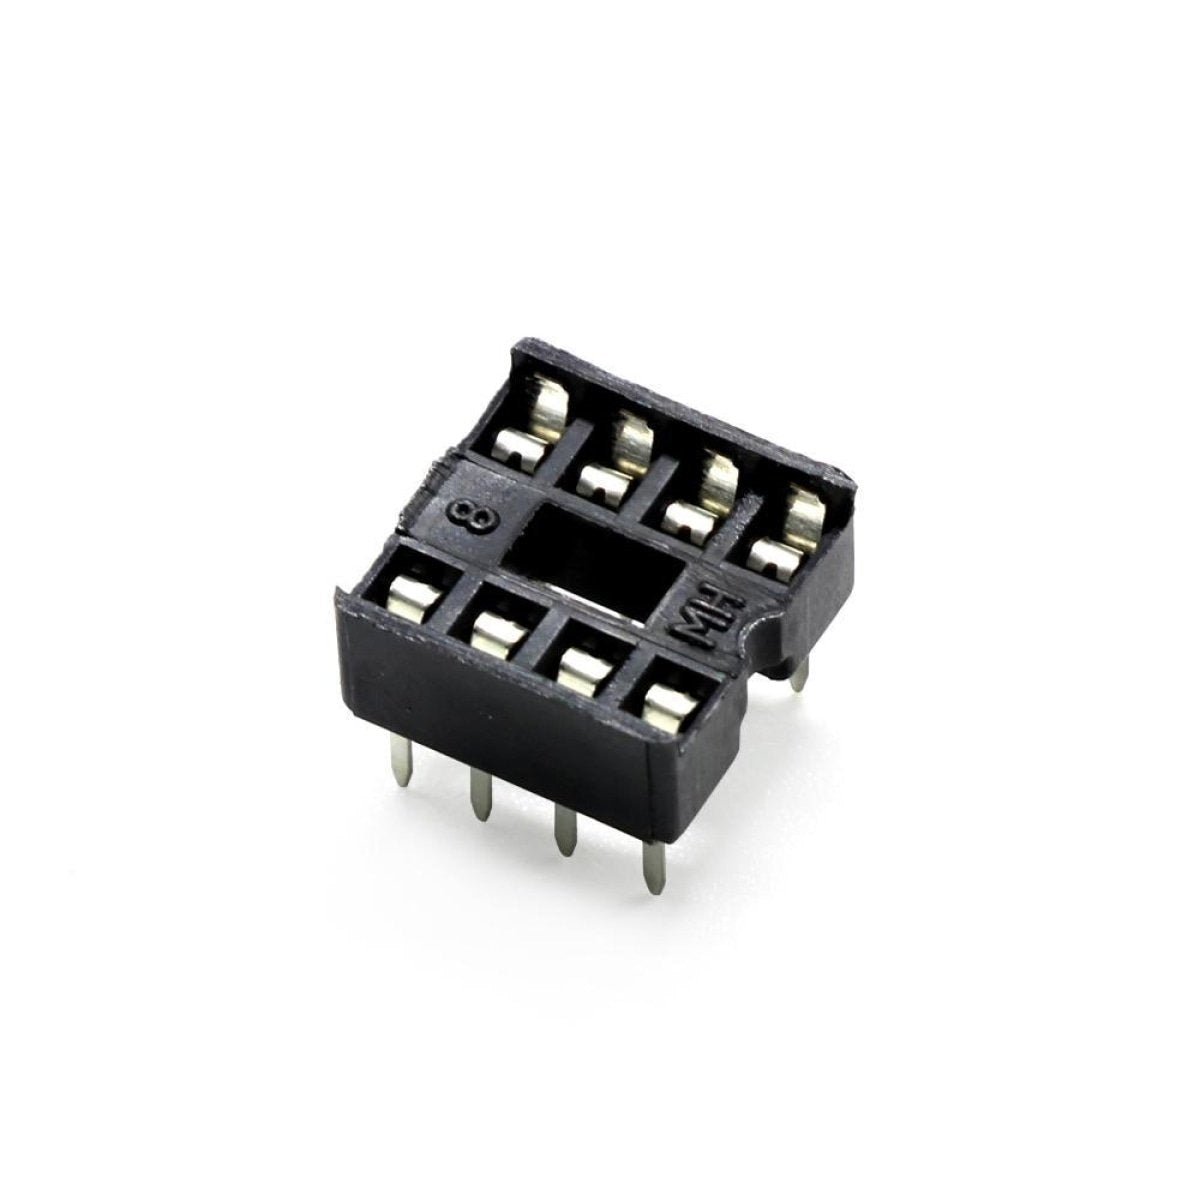 2pcs DIP IC Adaptor Solder Socket 6, 8, 14, 16, 18, 20, 24, 28, 32 Pin - 8 pins - - Asia Sell